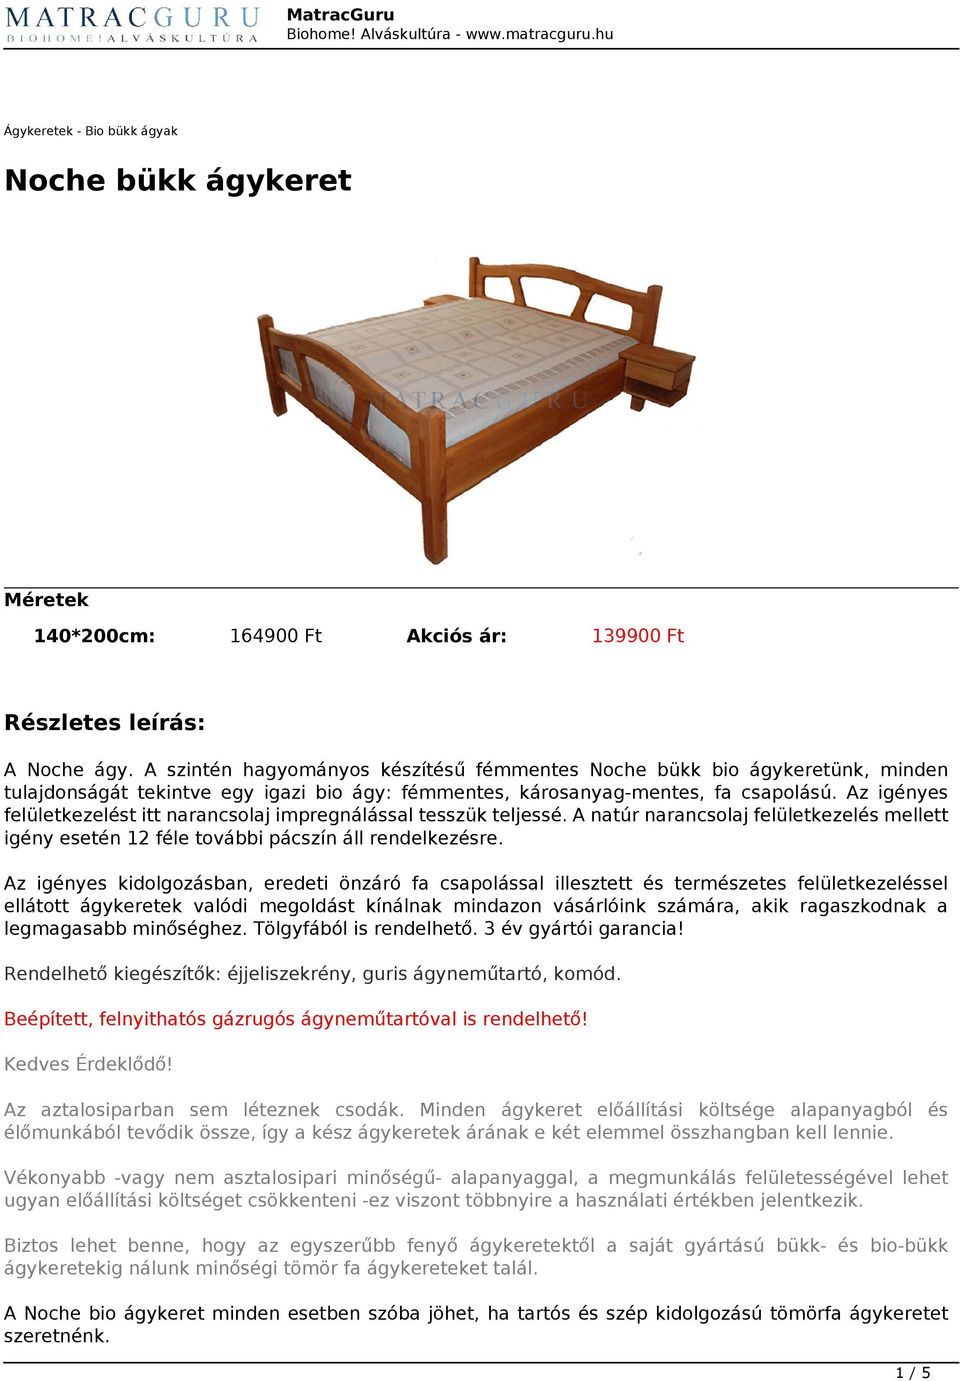 MatracGuru Biohome! Alváskultúra - - PDF Ingyenes letöltés